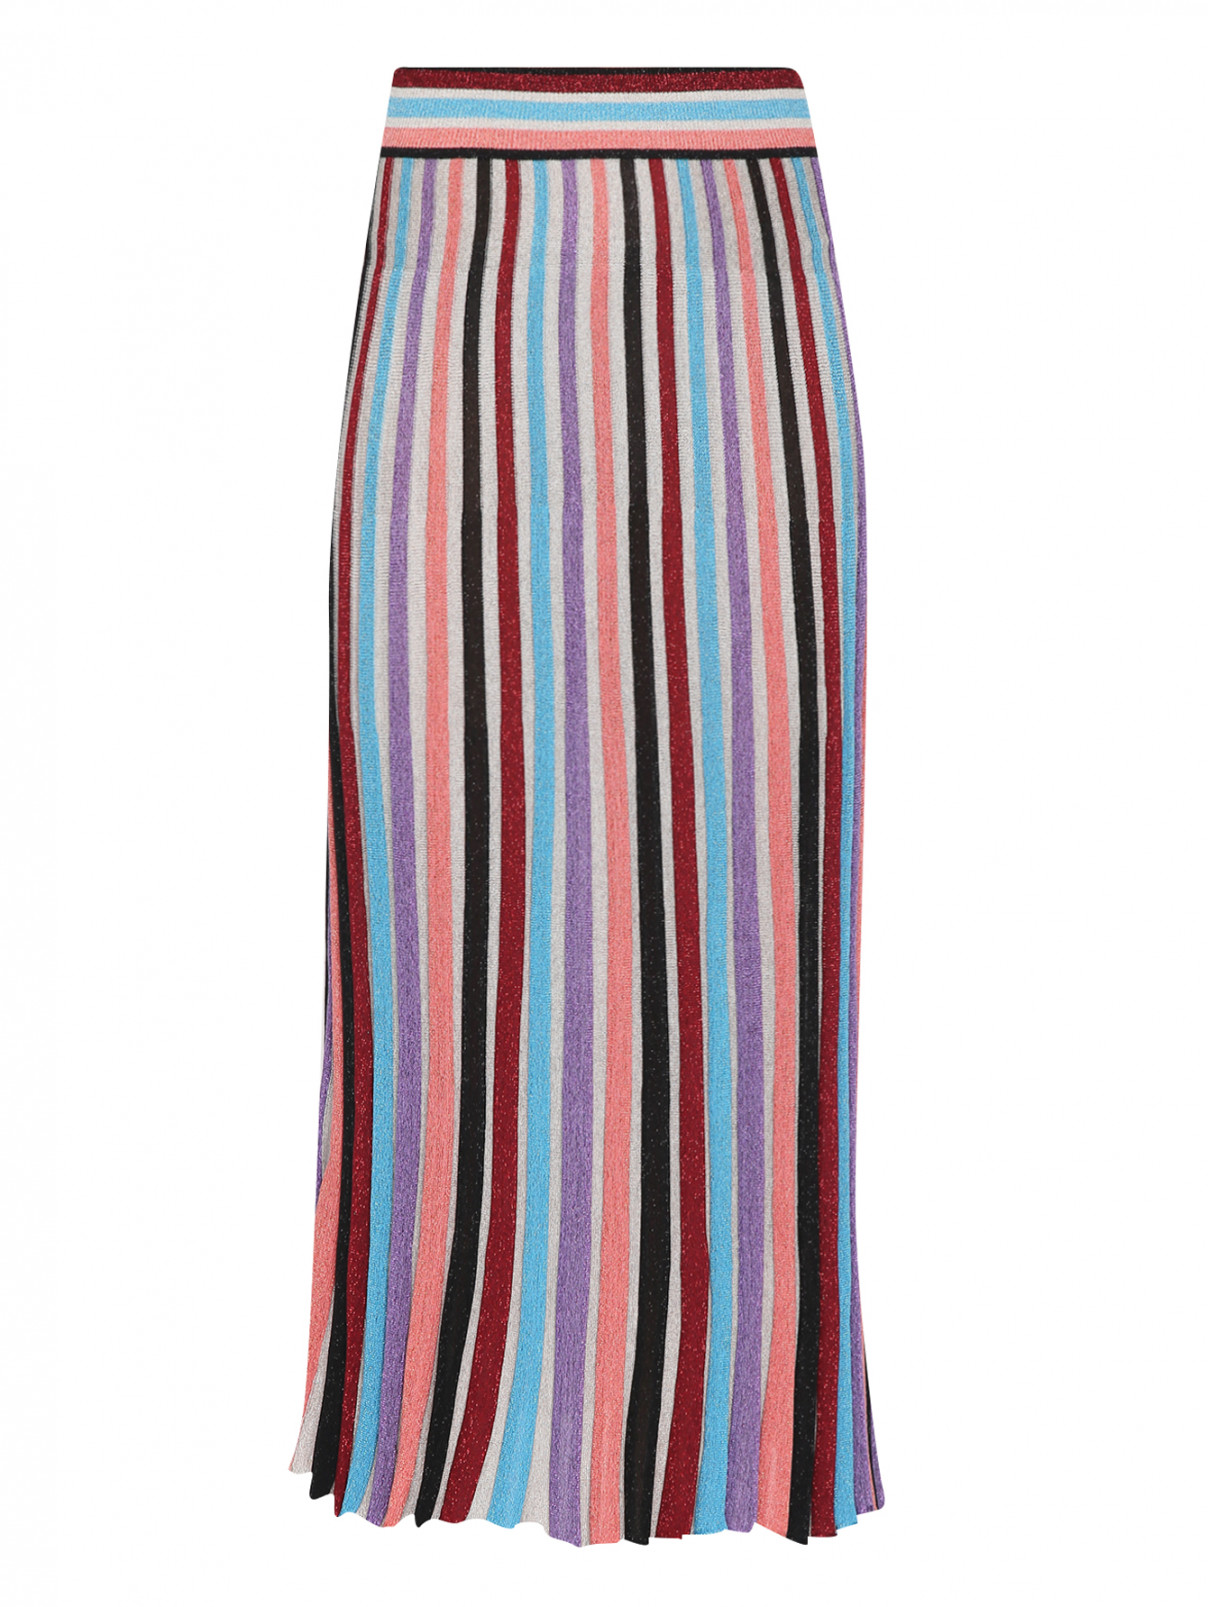 Трикотажная юбка с узором полоска Moschino Boutique  –  Общий вид  – Цвет:  Мультиколор